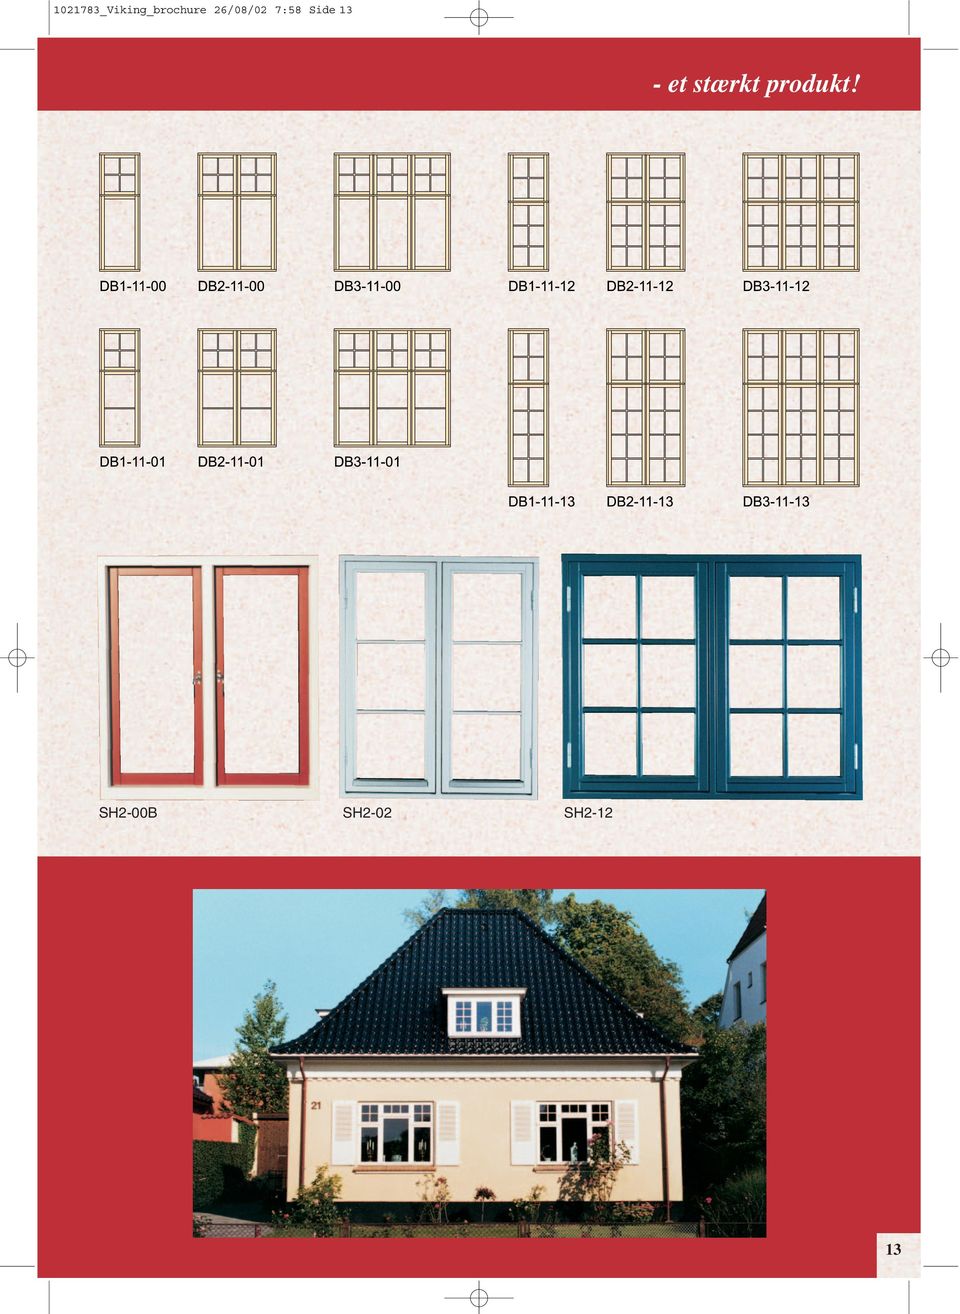 _Viking_brochure 26/08/02 7:58 Side 1. - et stærkt produkt! VIKING. vinduer  & døre A/S. Juni - PDF Free Download